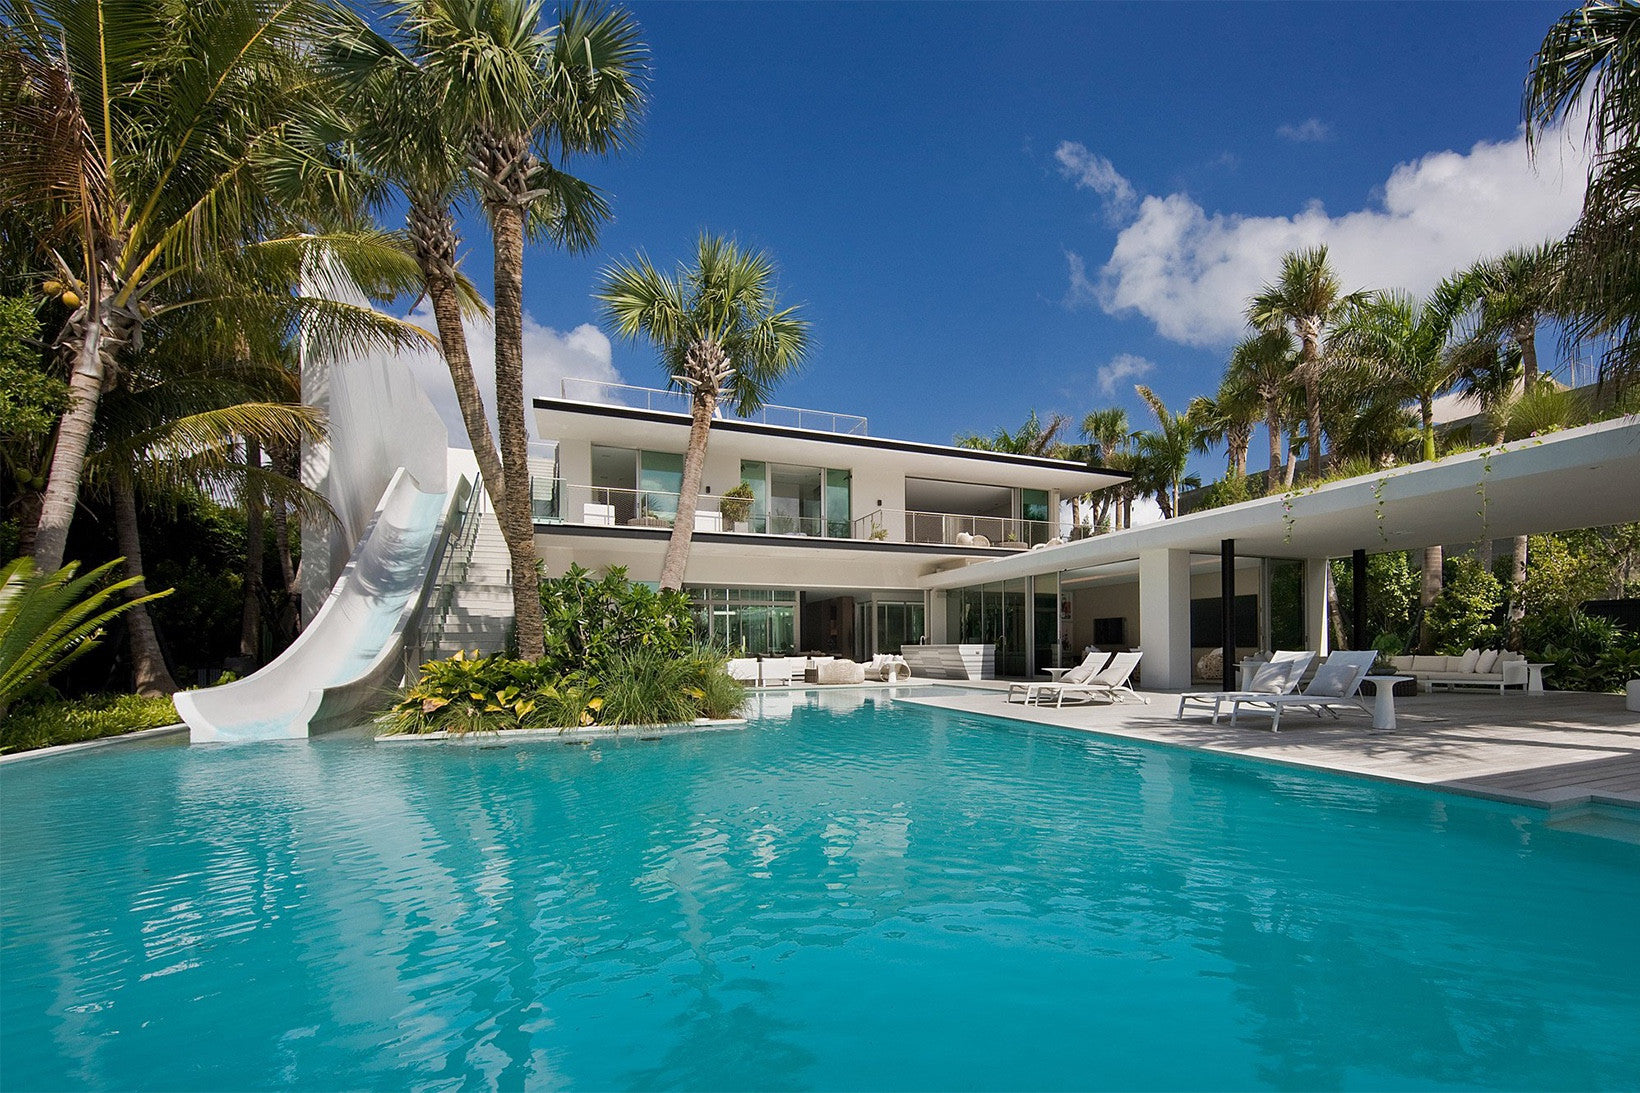 SAOTA Built the Miami Beach House of Your Dreams